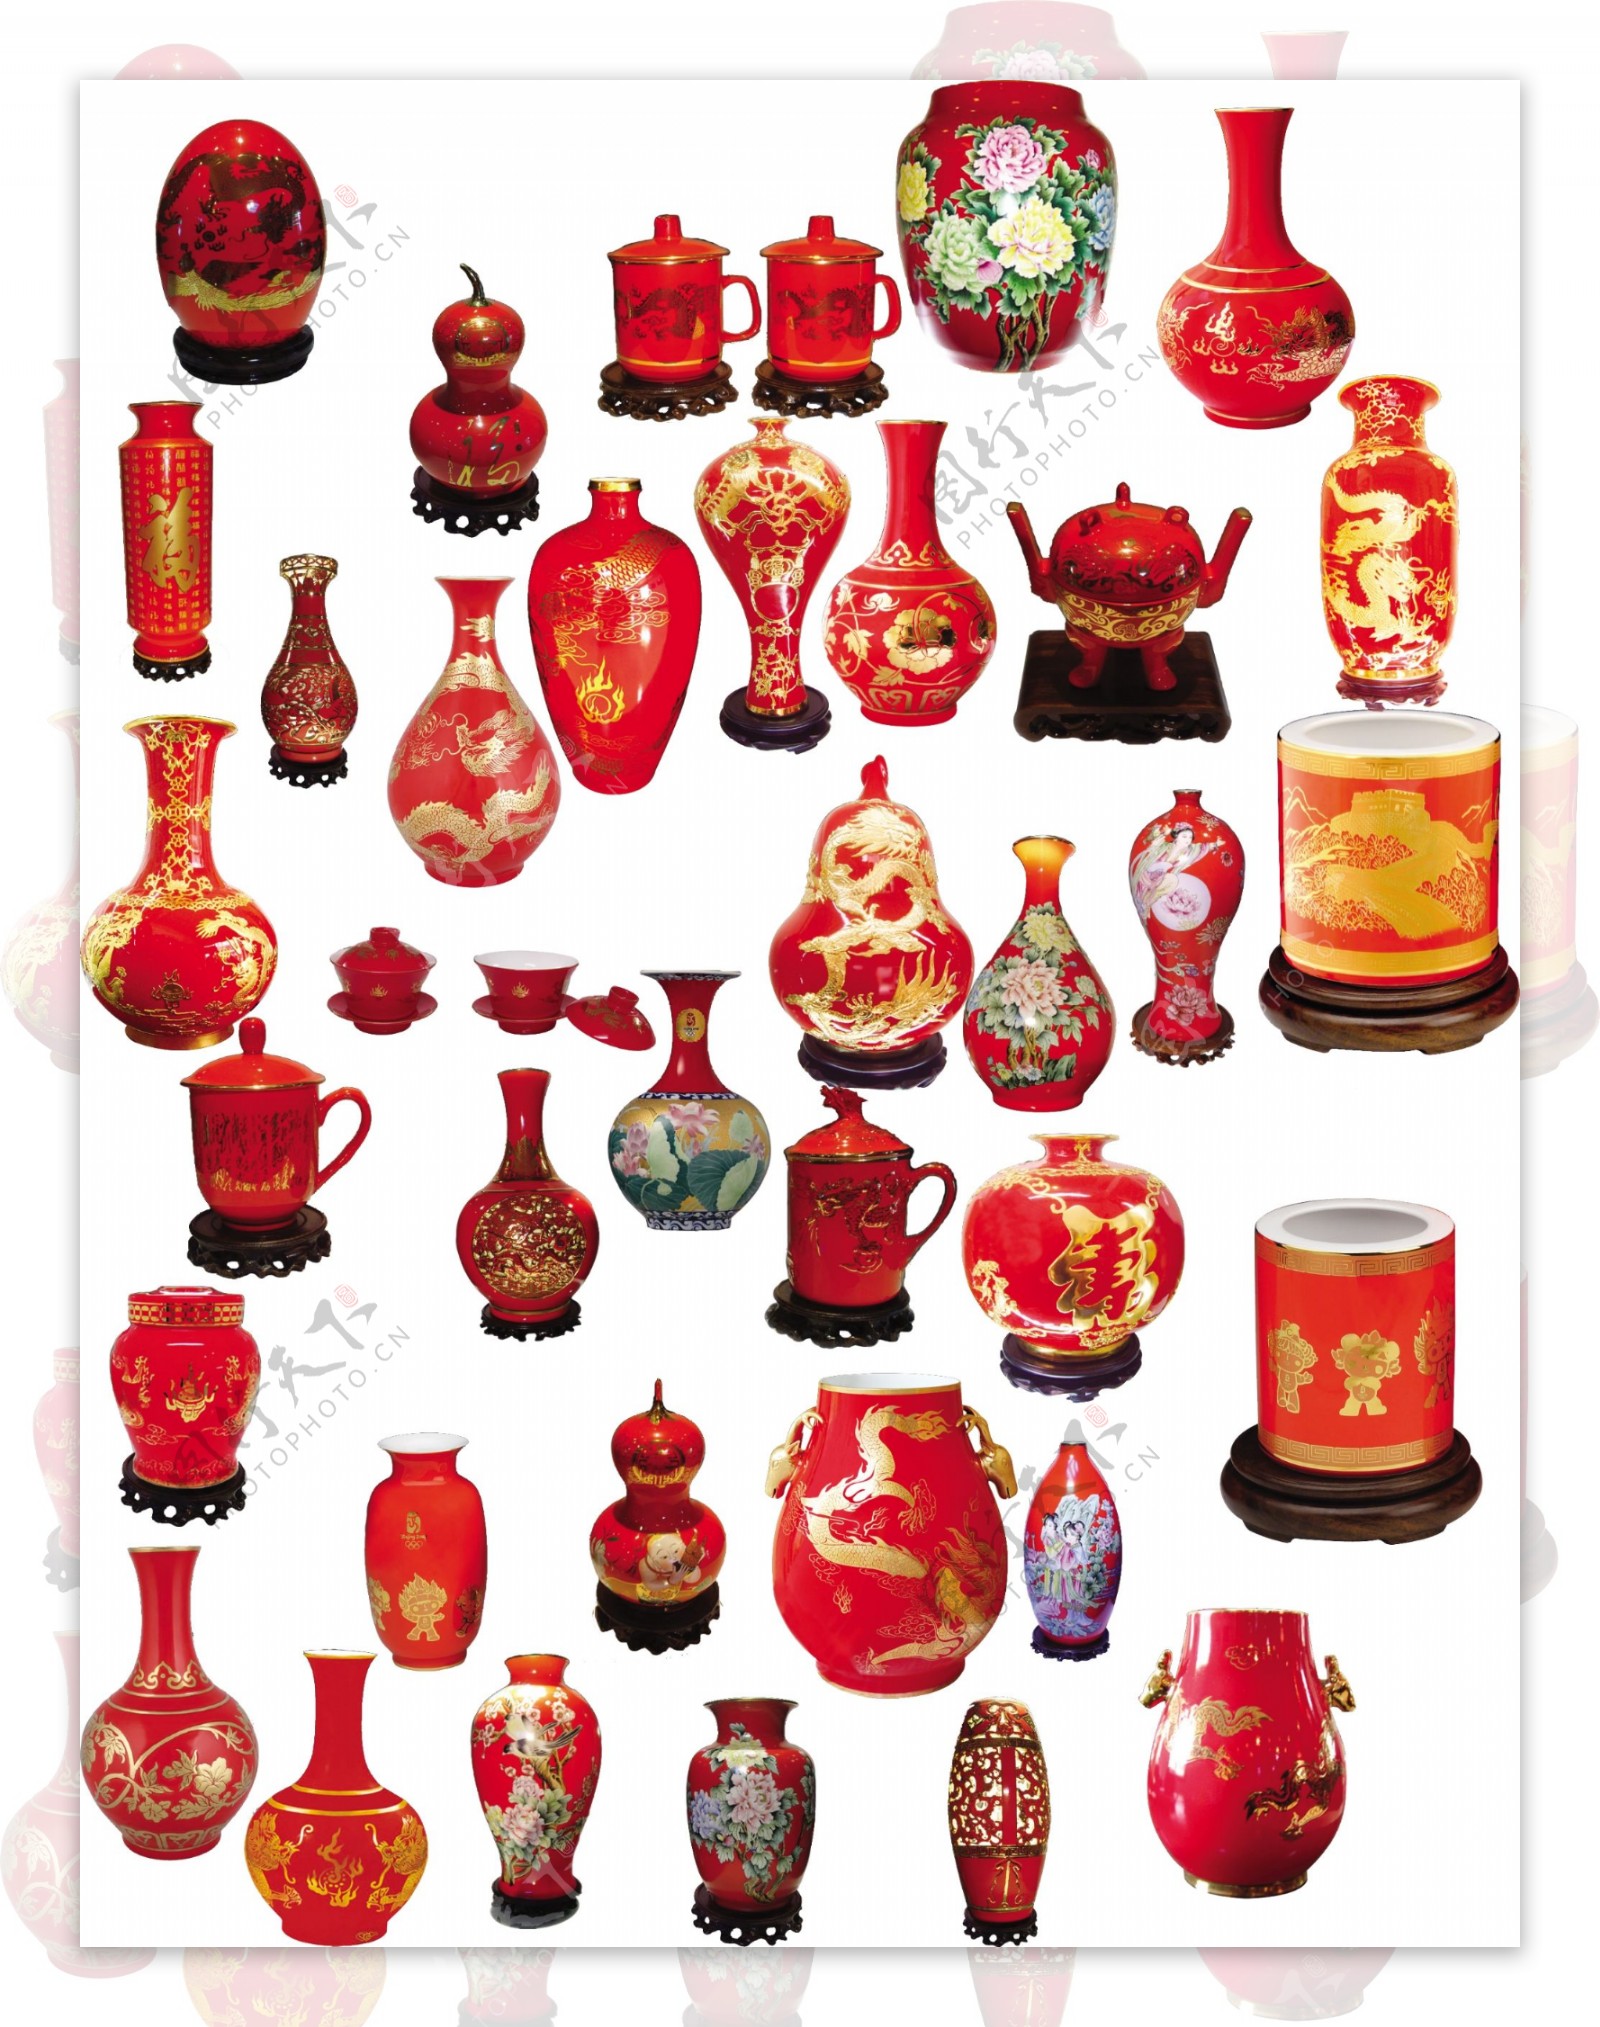 中国红瓷器合辑PSD抠图素材下载